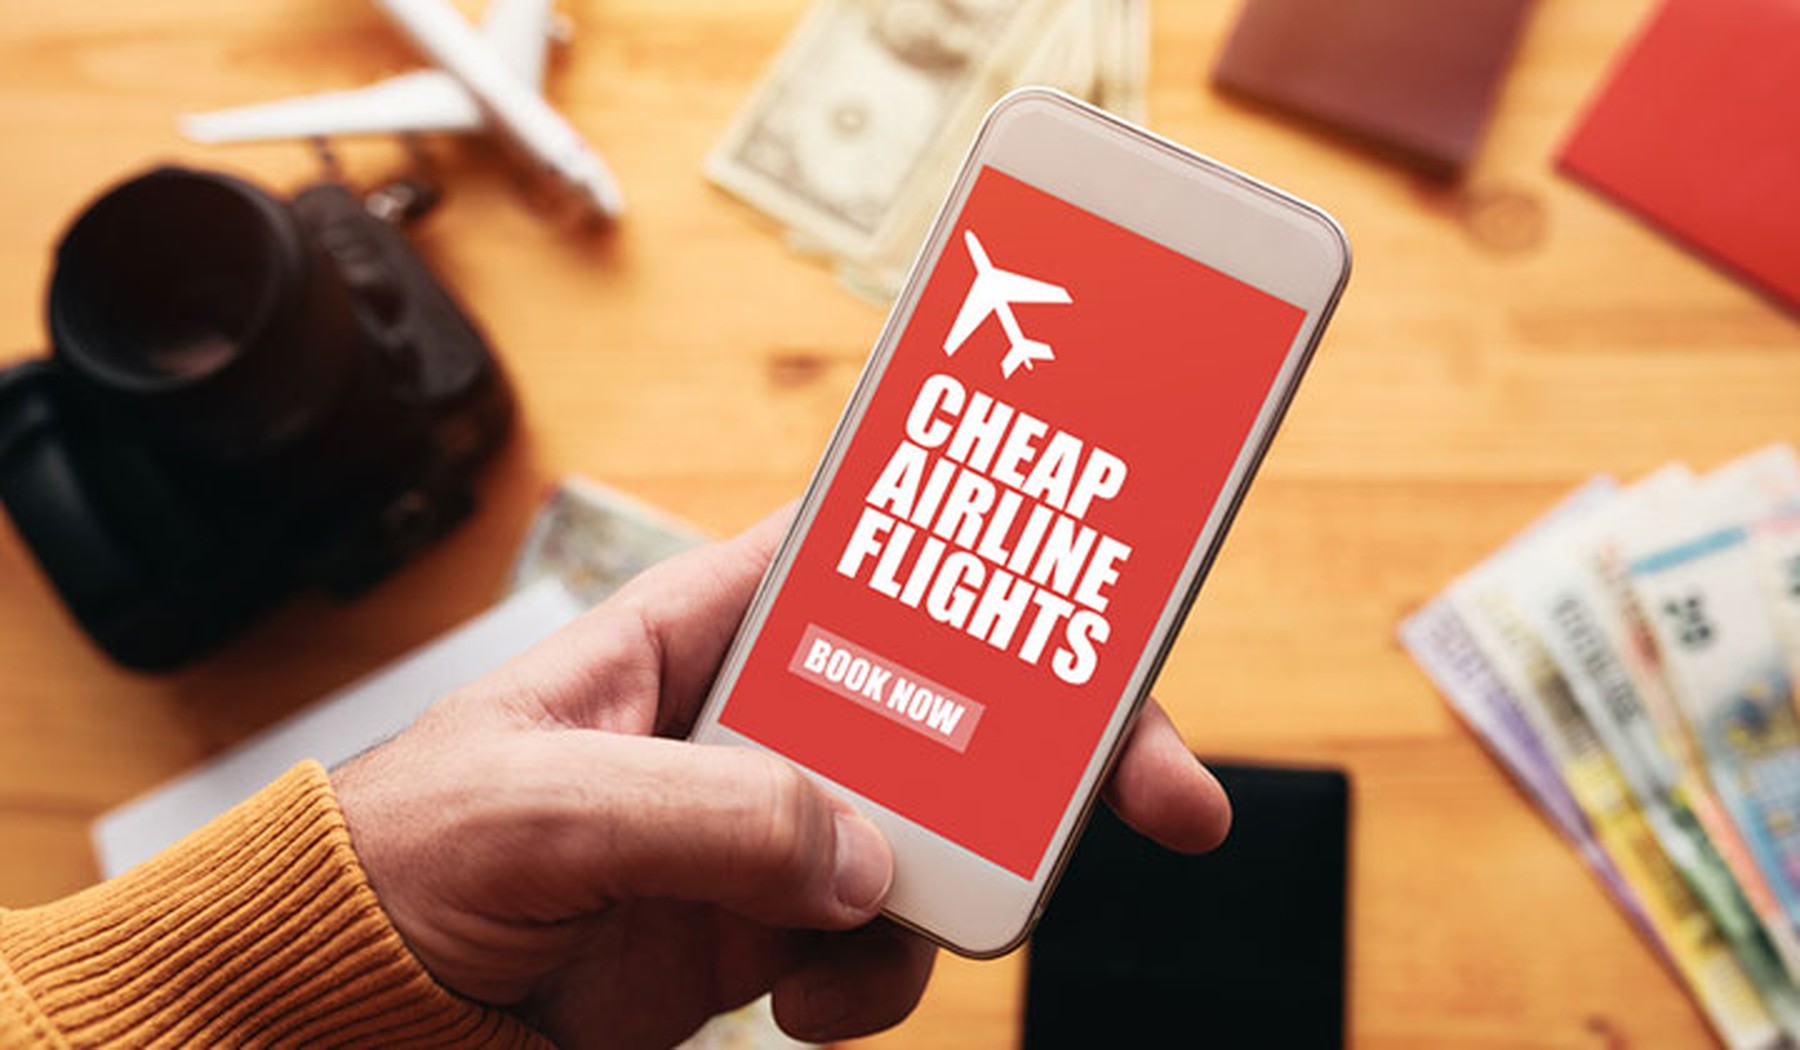 Persona buscando vuelos baratos con el smartphone